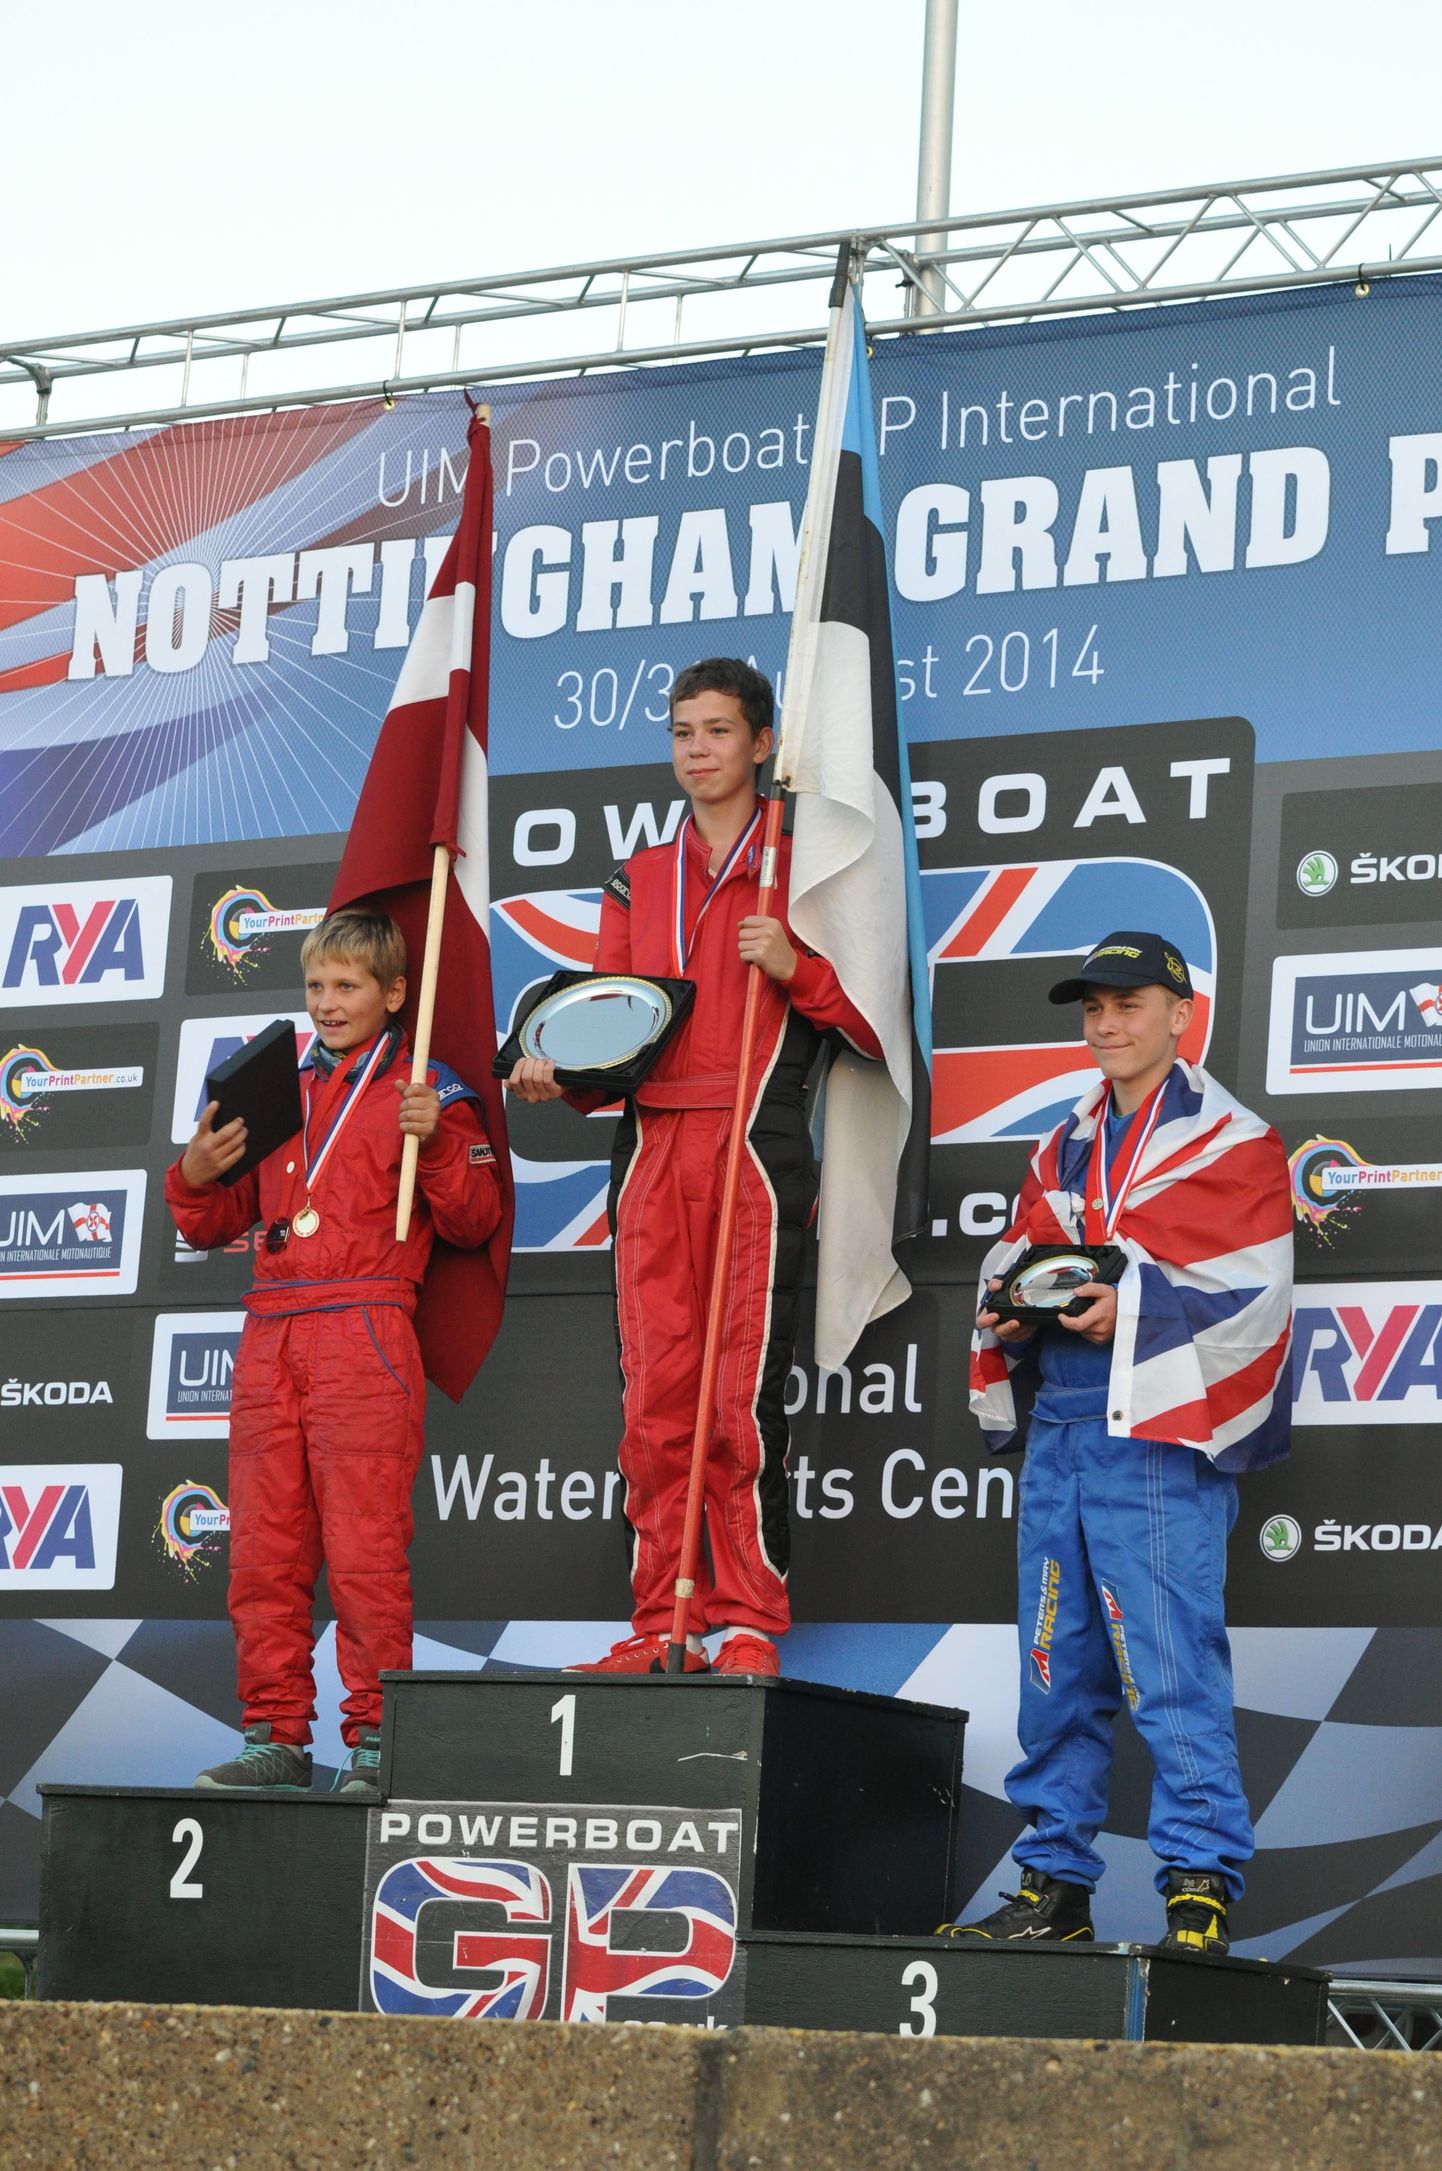 Viljandi veemotospordiklubi Nord sõitja Gregor Eevardi tuli GT-15 klassis Euroopa meistriks.